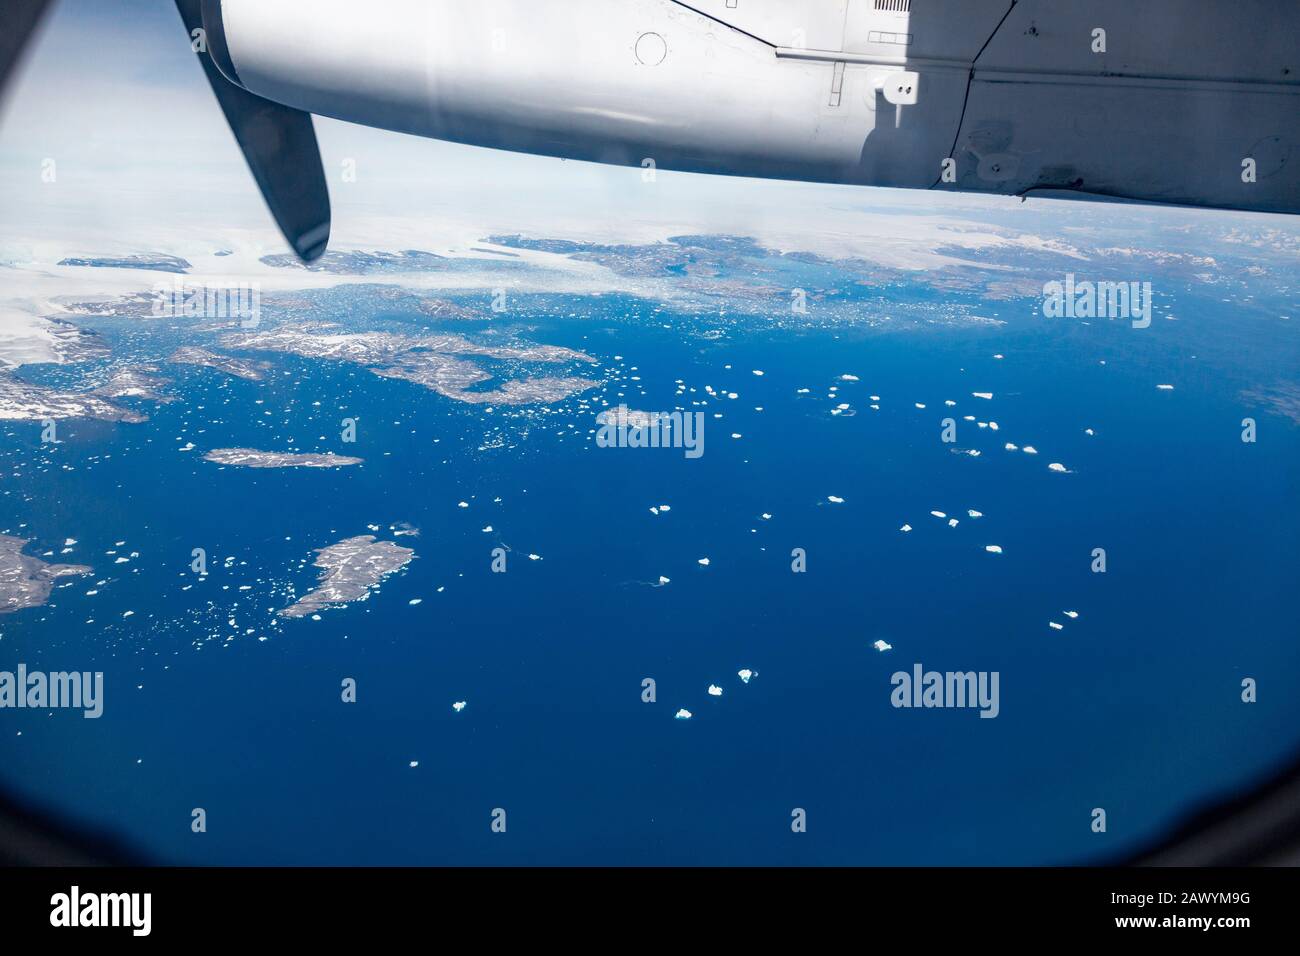 Vue de l'avion du chancelier de la fonte de la calotte glaciaire polaire Groenland Banque D'Images